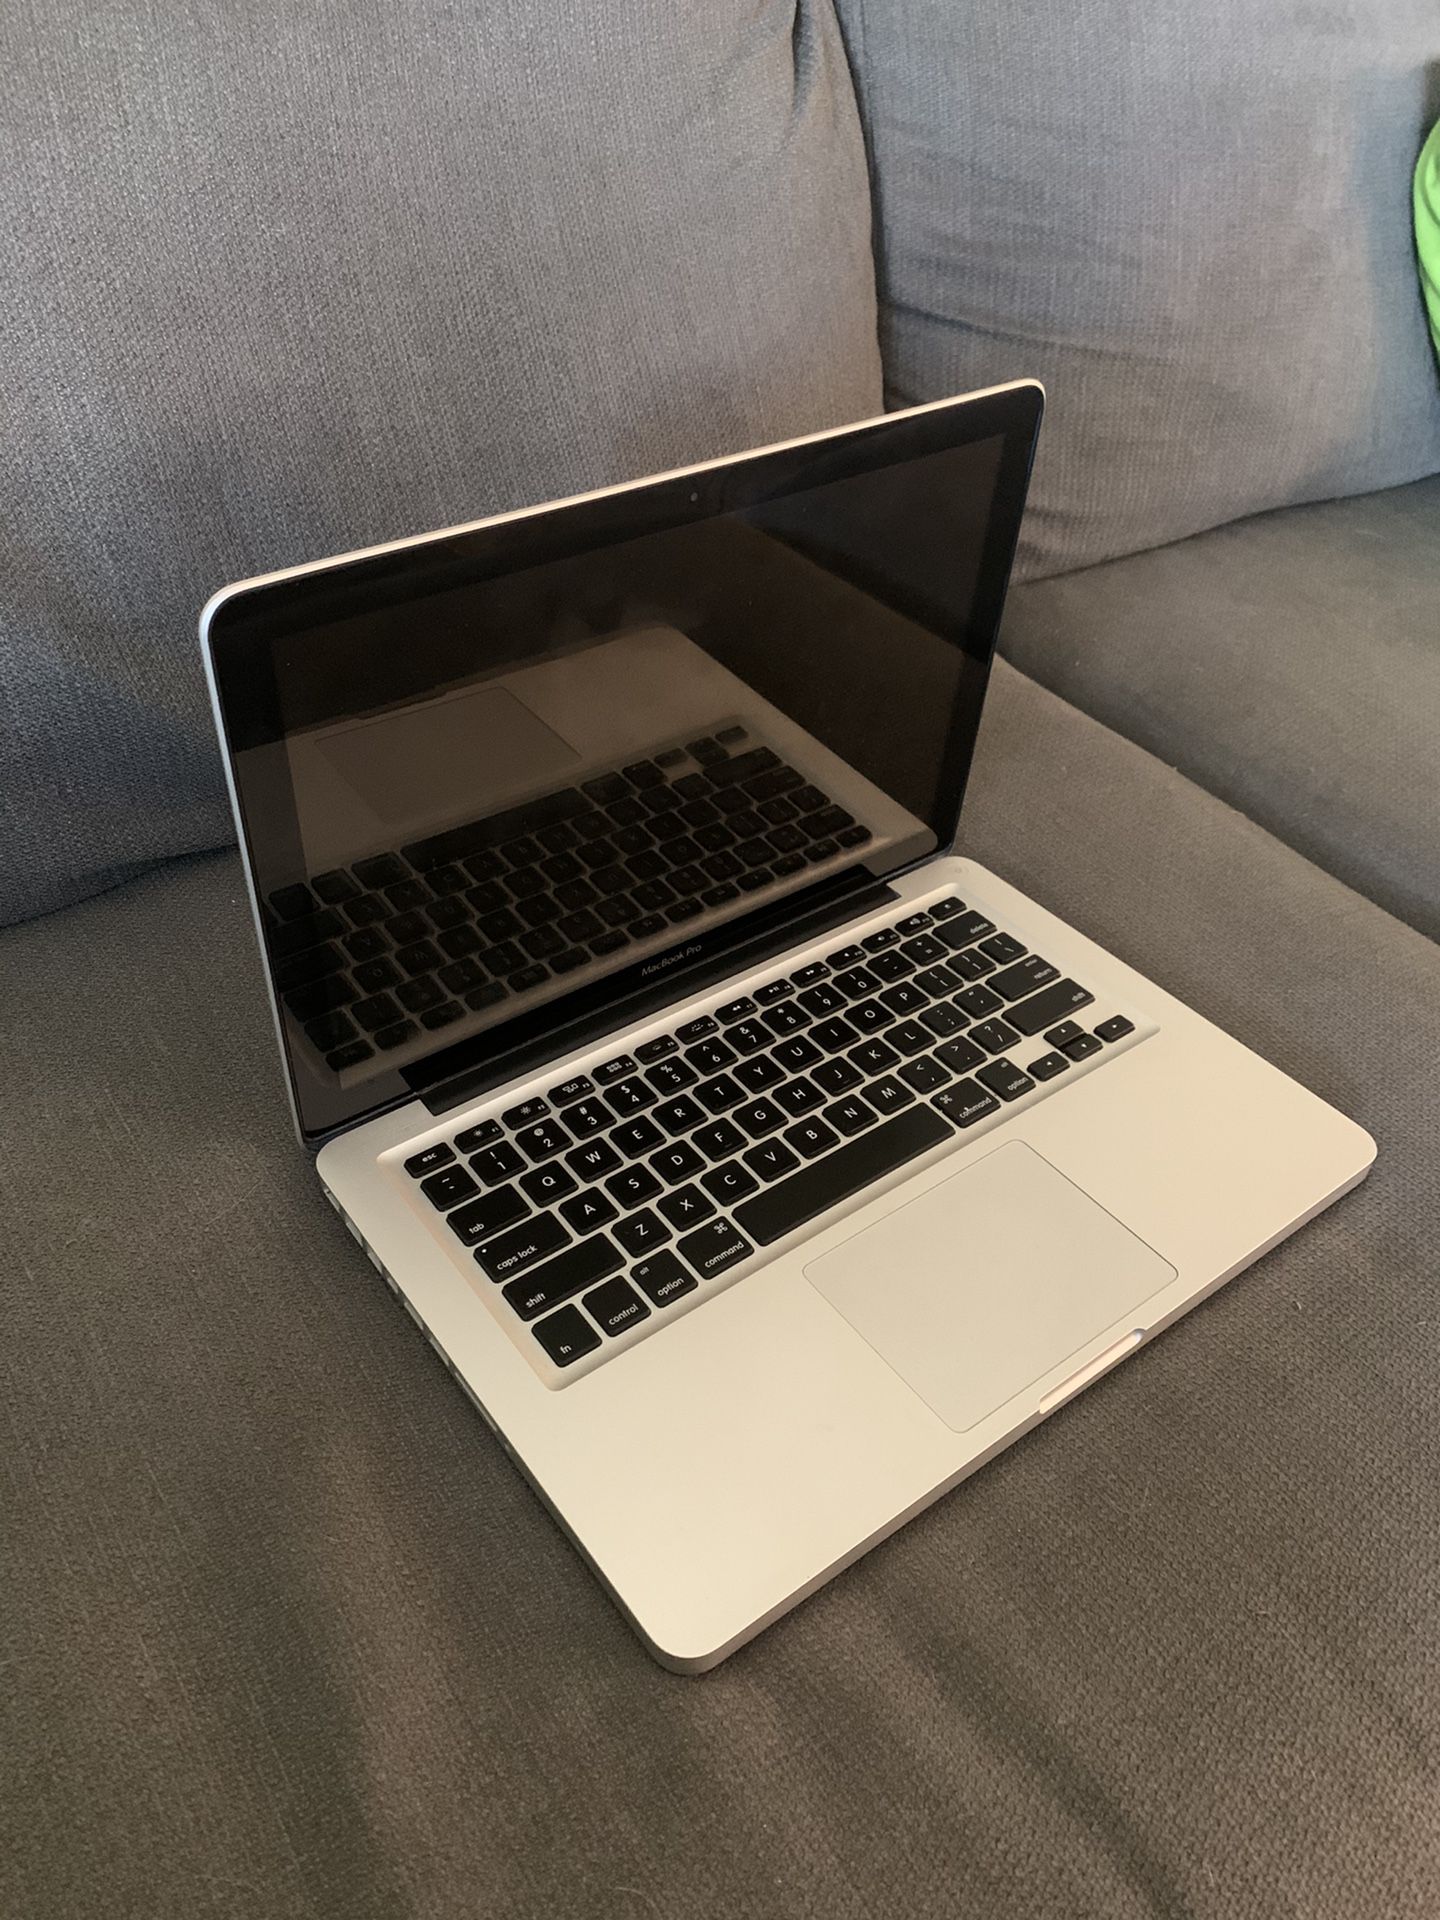 2012 Macbook Pro 13in